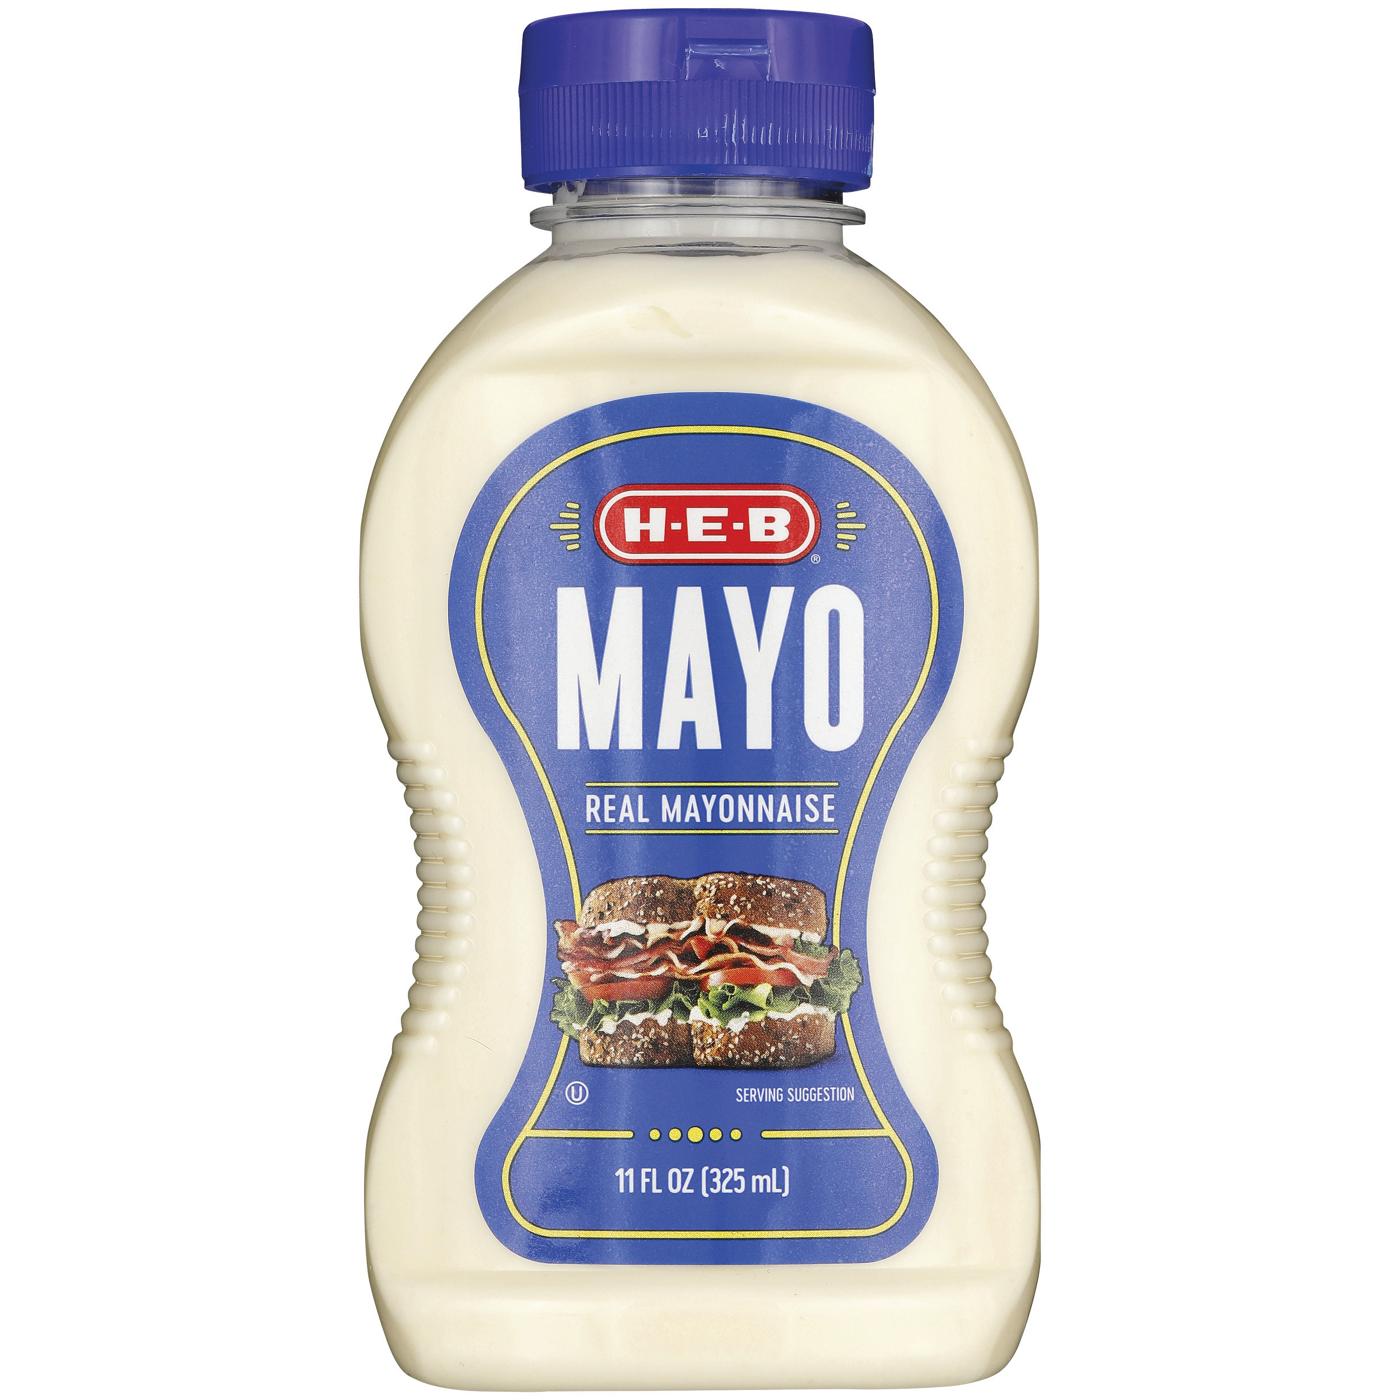 H-E-B Real Mayonnaise; image 1 of 2